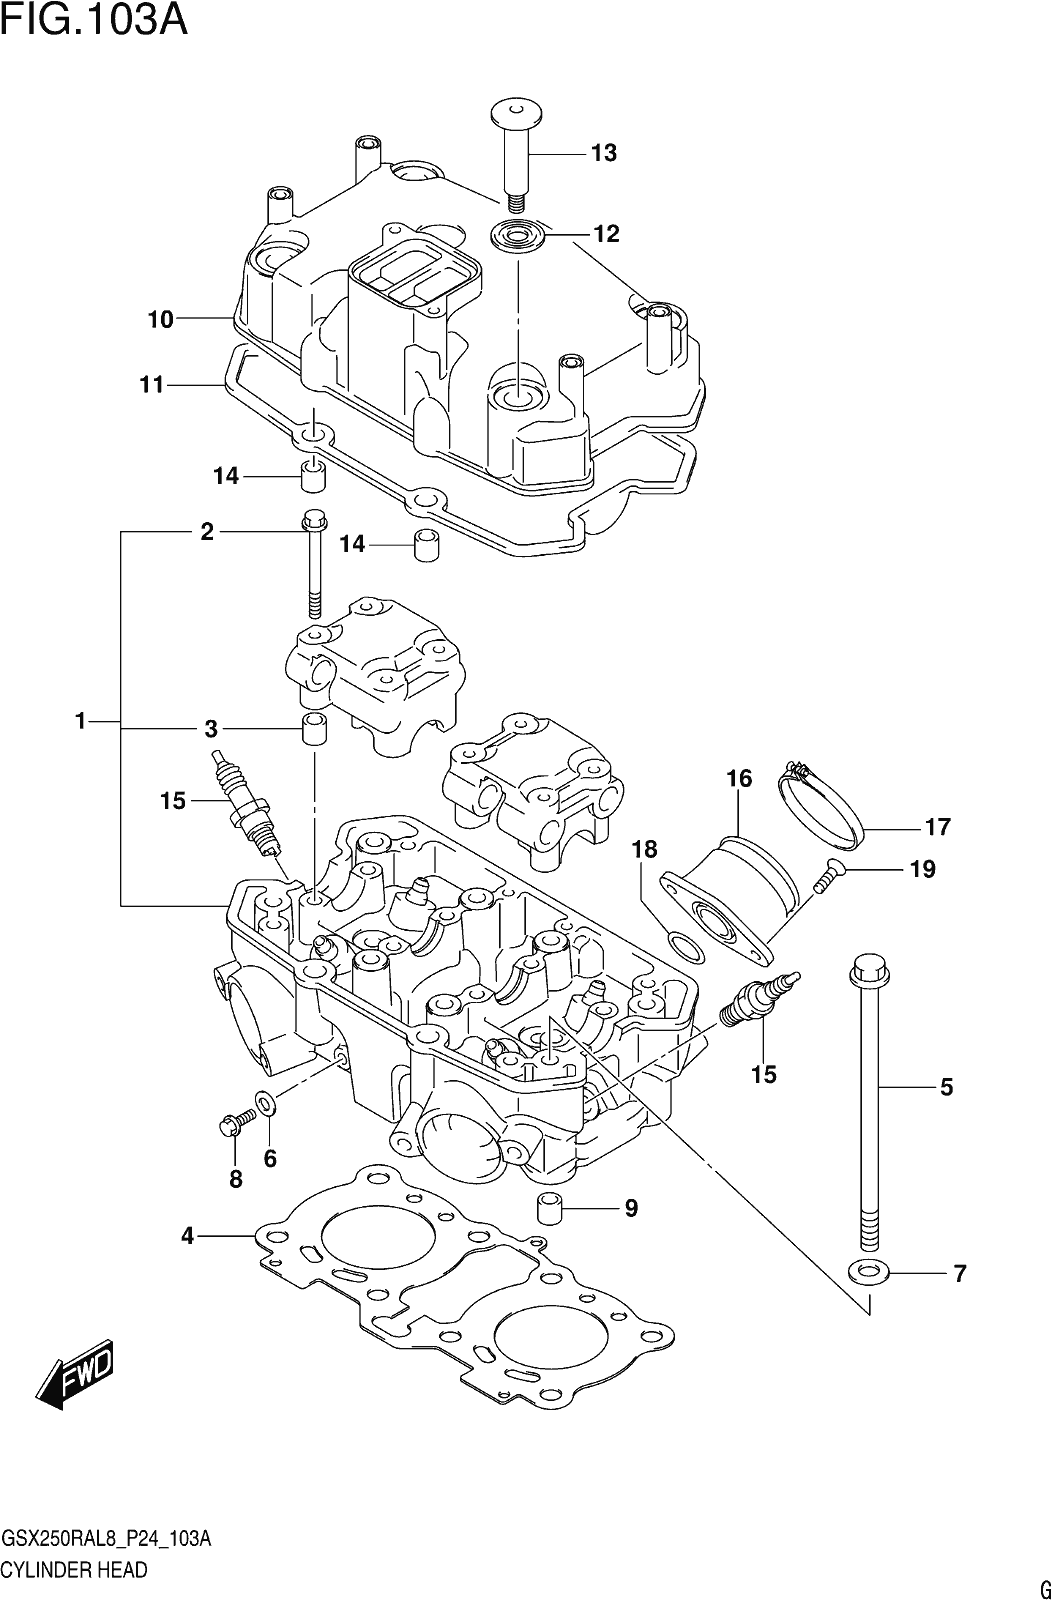 Fig.103a Cylinder Head